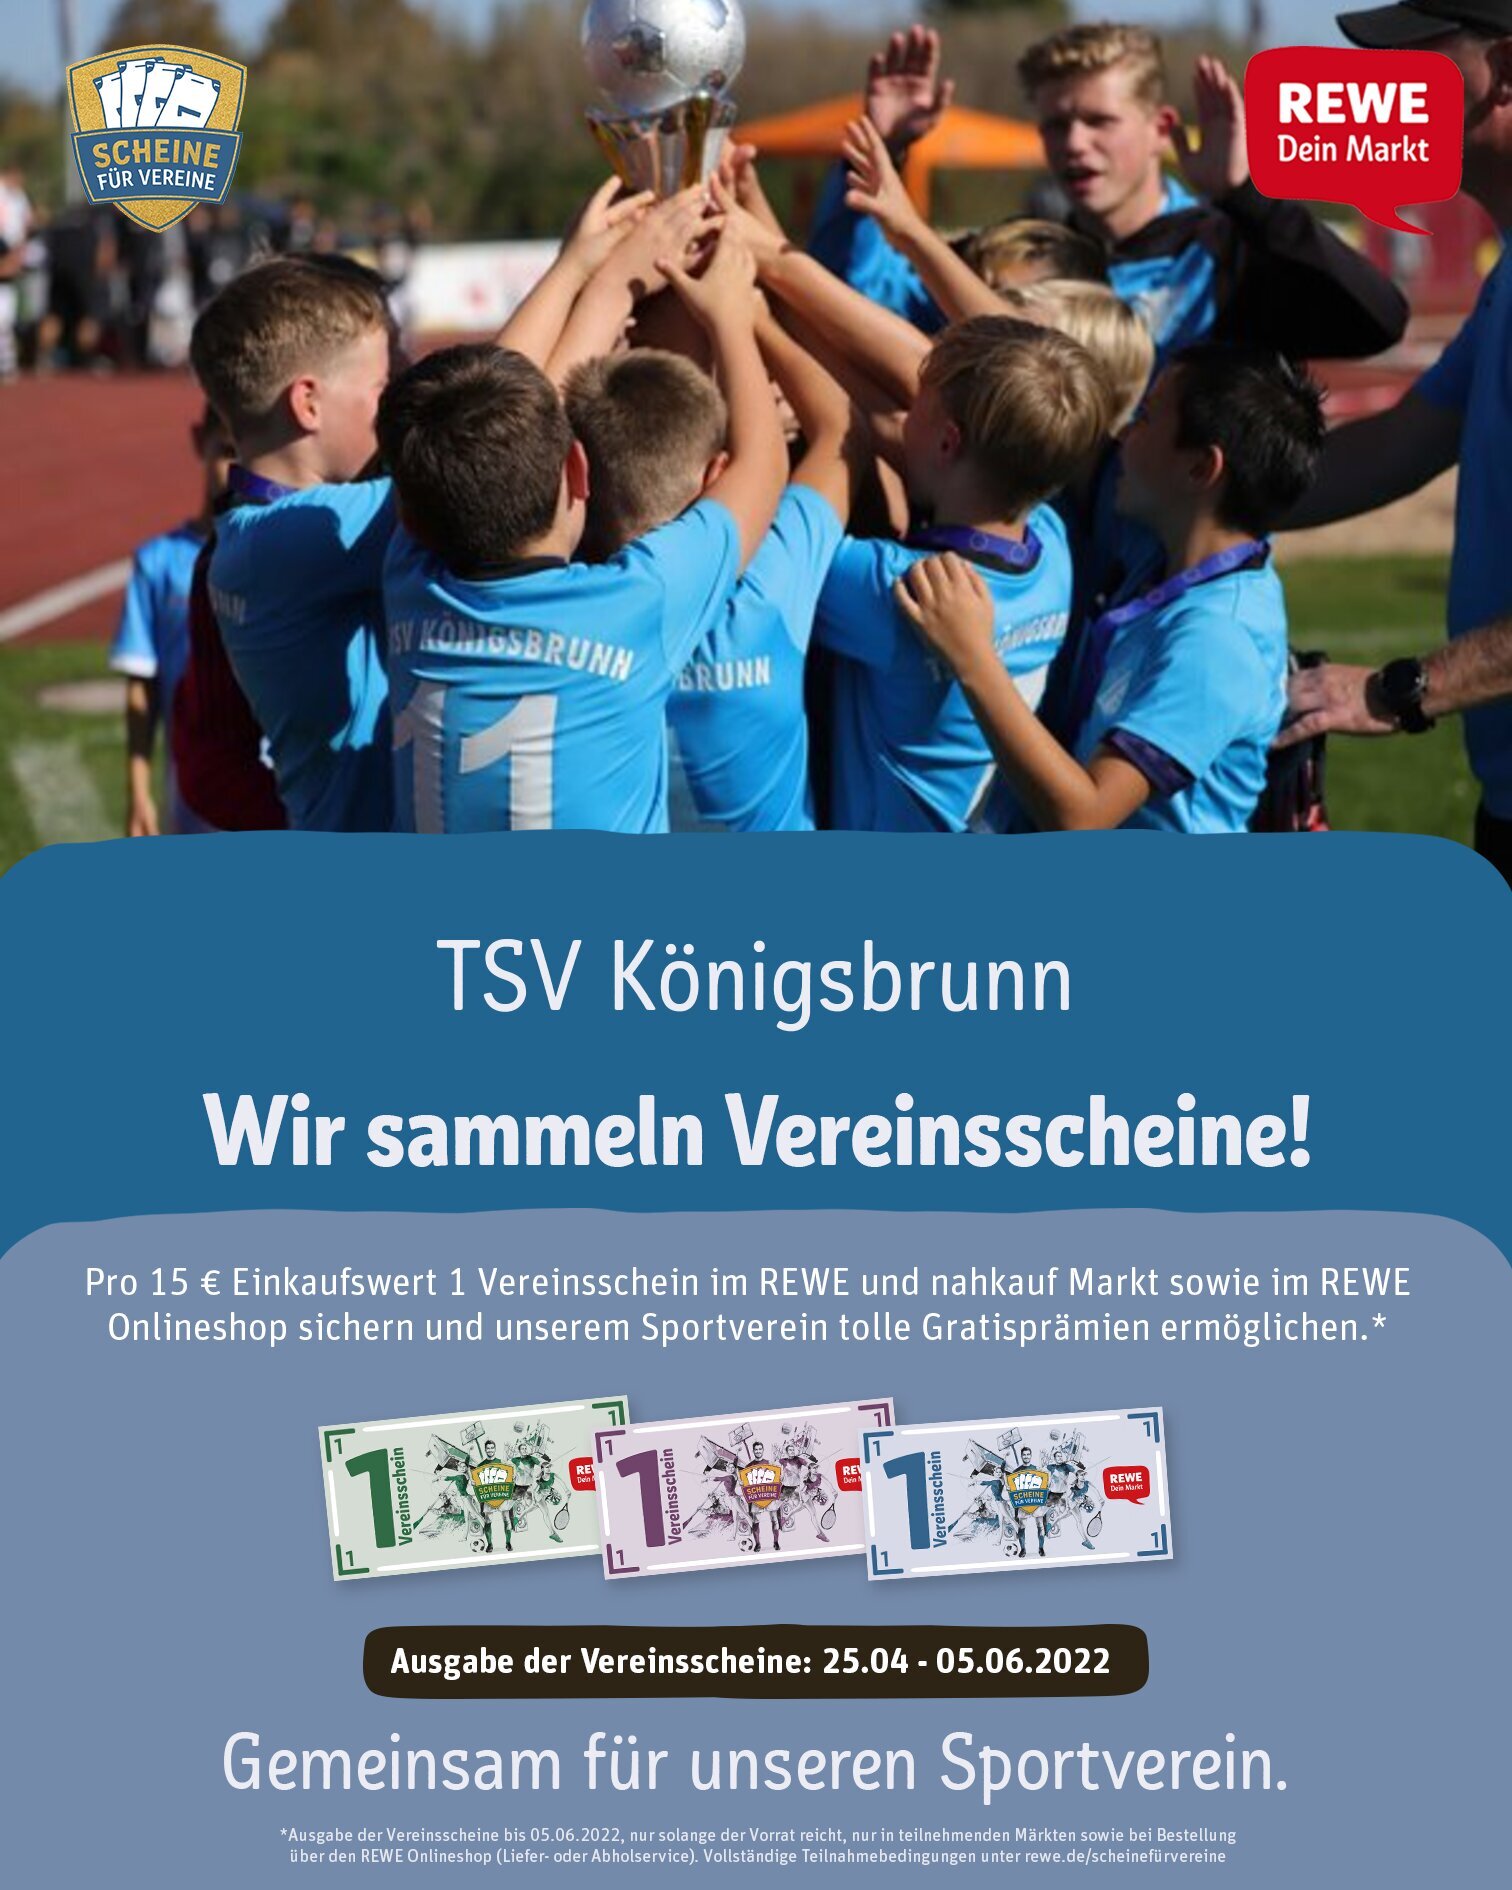 TSV Königsbrunn Scheine für Vereine